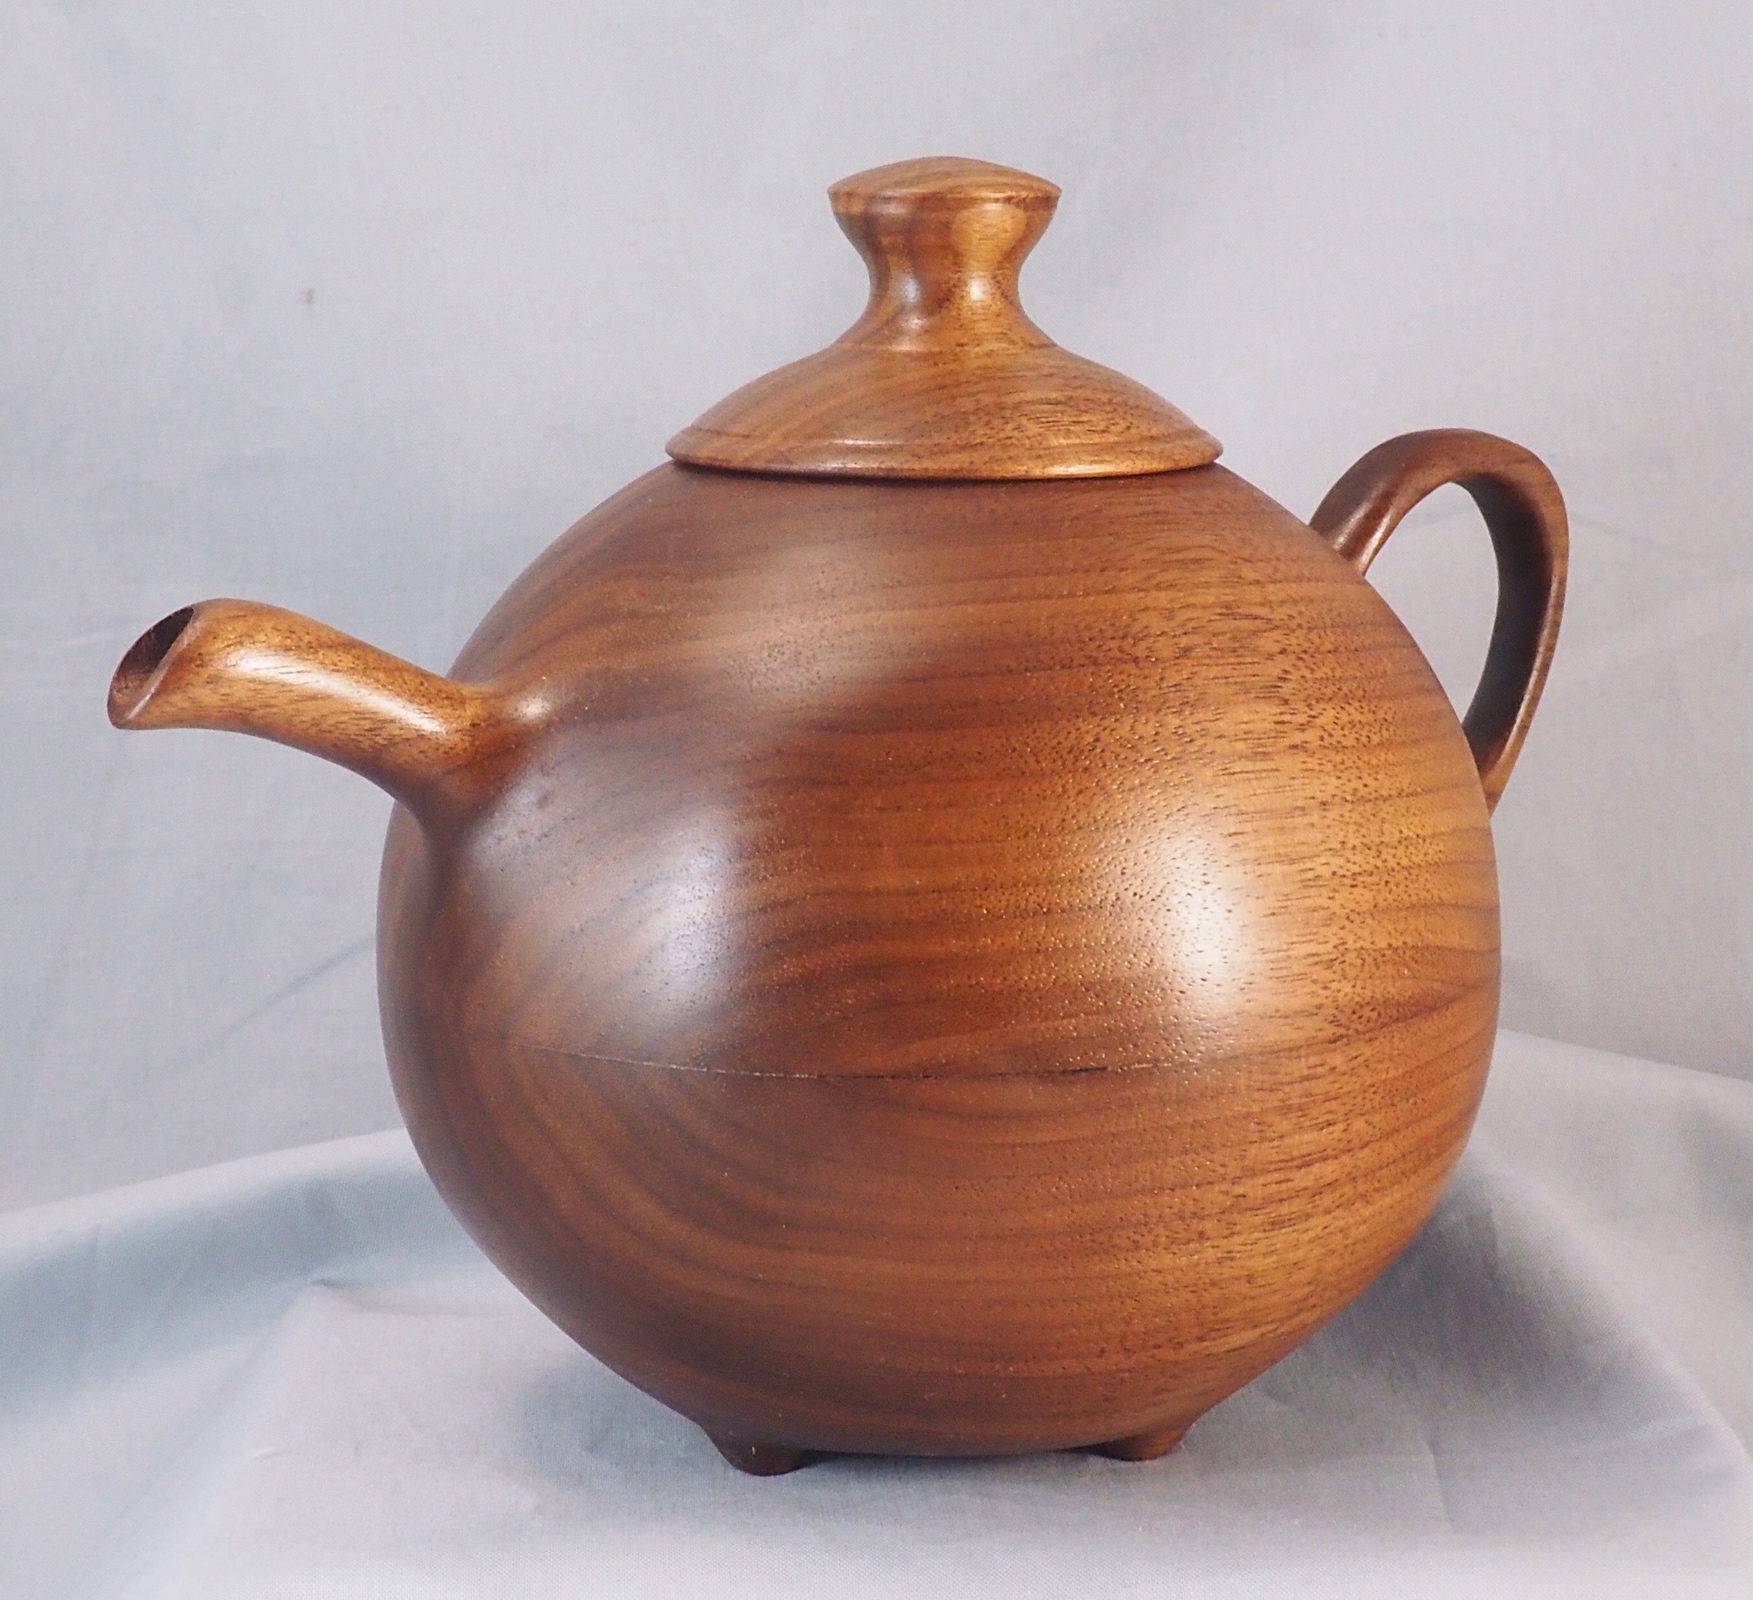 Walnut teapot